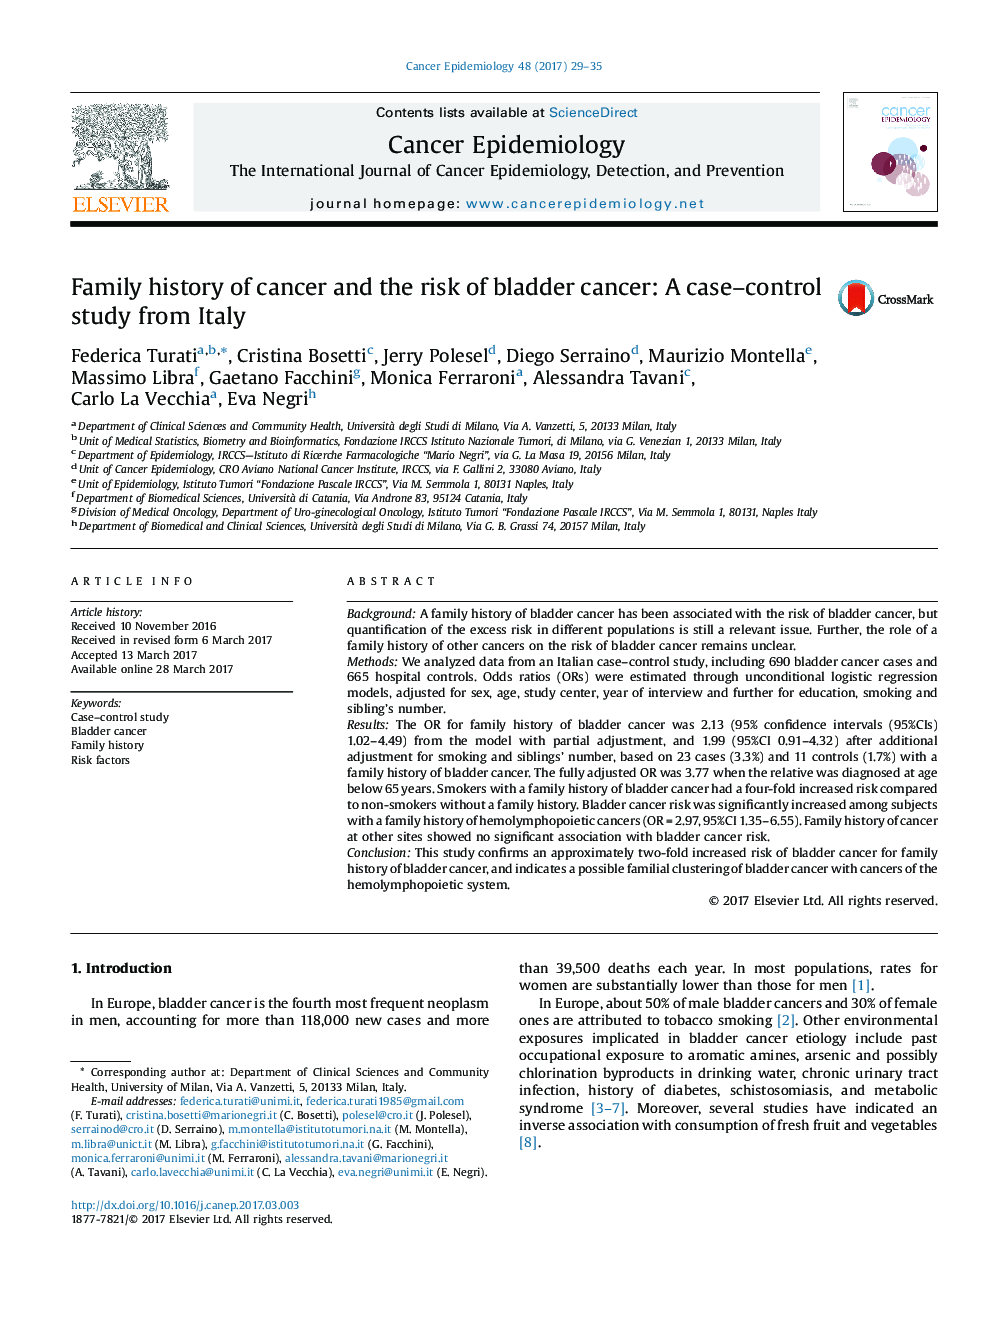 سابقه خانوادگی سرطان و خطر ابتلا به سرطان مثانه: یک مطالعه مورد-شاهد از ایتالیا 